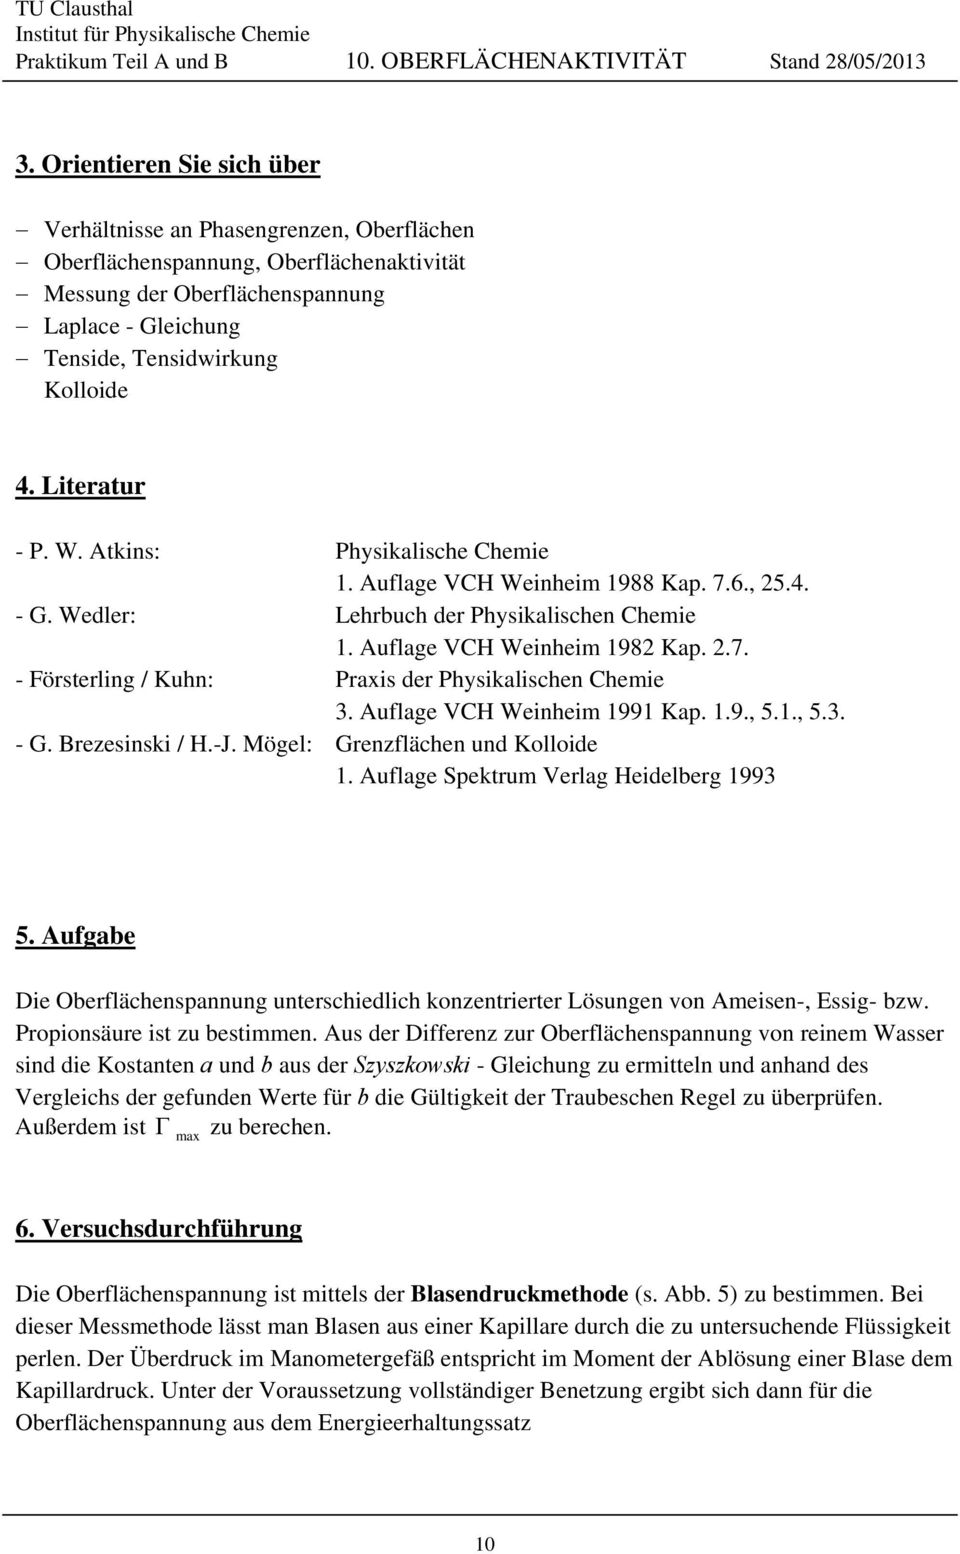 Literatur - P. W. Atkins: Physikalishe Chemie 1. Auflage VCH Weinheim 1988 Kap. 7.6., 5.4. - G. Wedler: Lehrbuh der Physikalishen Chemie 1. Auflage VCH Weinheim 198 Kap..7. - Försterling / Kuhn: Praxis der Physikalishen Chemie 3.